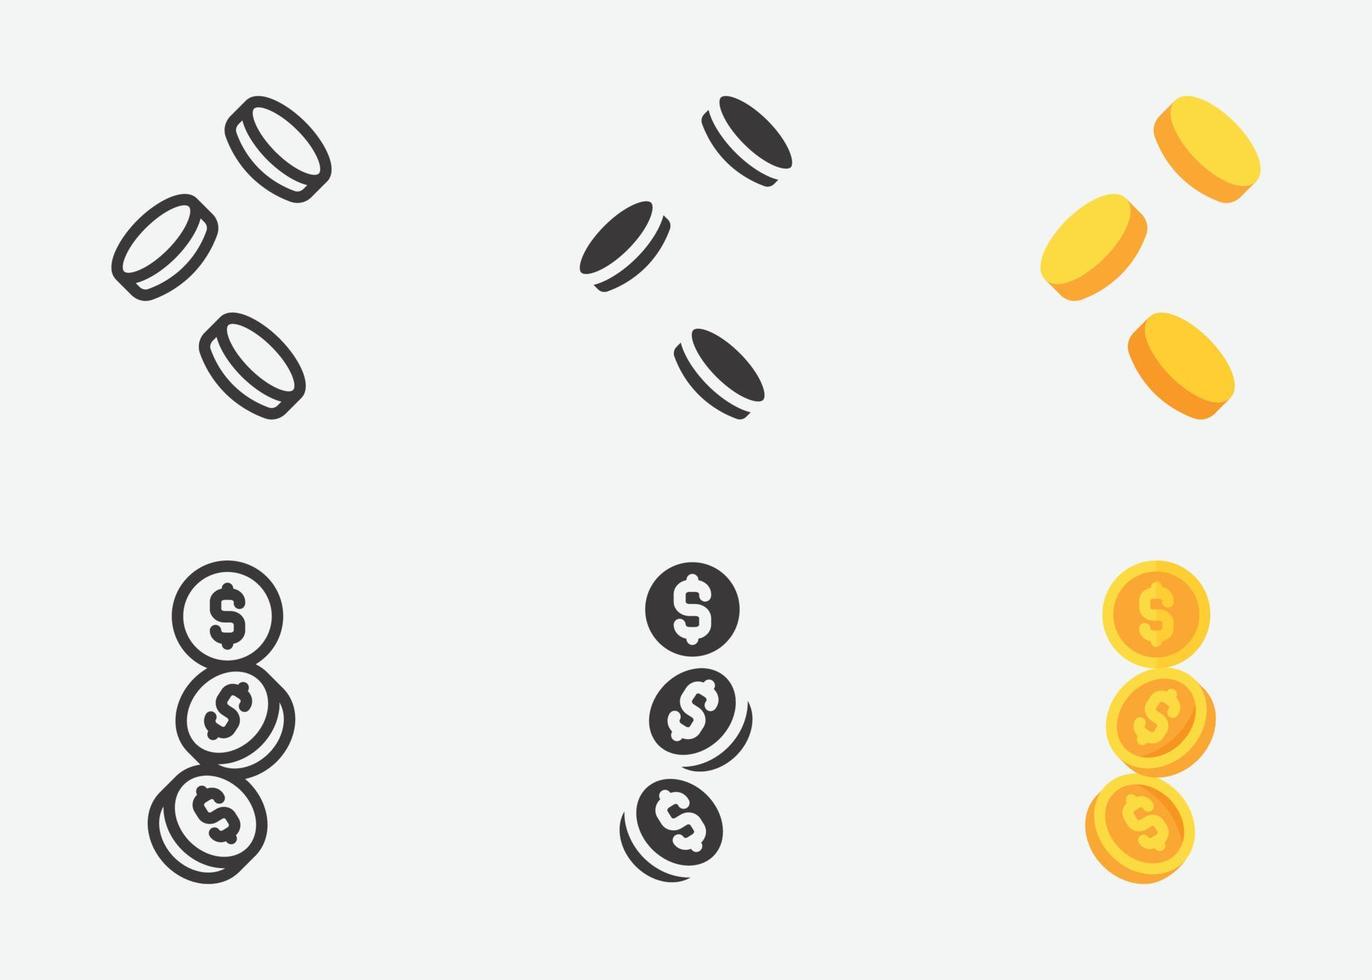 Münz-Icon-Set. verschiedene münzensammlung, münzensilhouetten-ikonensammlung, münze im flachen stil und umriss. einfache Web-Icons gesetzt. Vektor